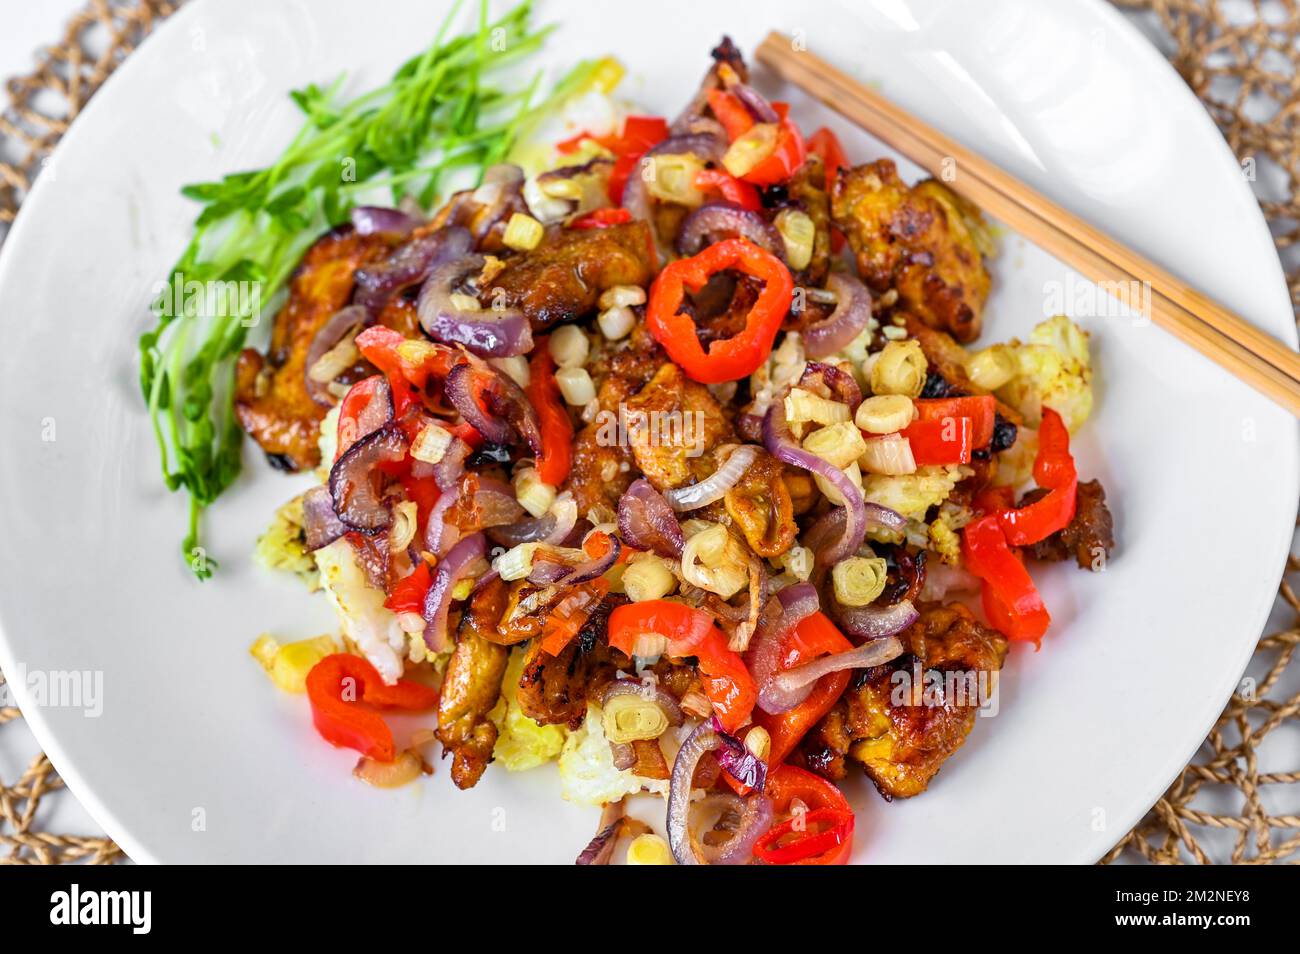 Pezzo di pollo arrosto con pepe rosso, peperoncino, cipolla, aglio con salsa di soia sul riso, bastone di carne sul piatto bianco. Cucina asiatica (vietnamita). Foto Stock